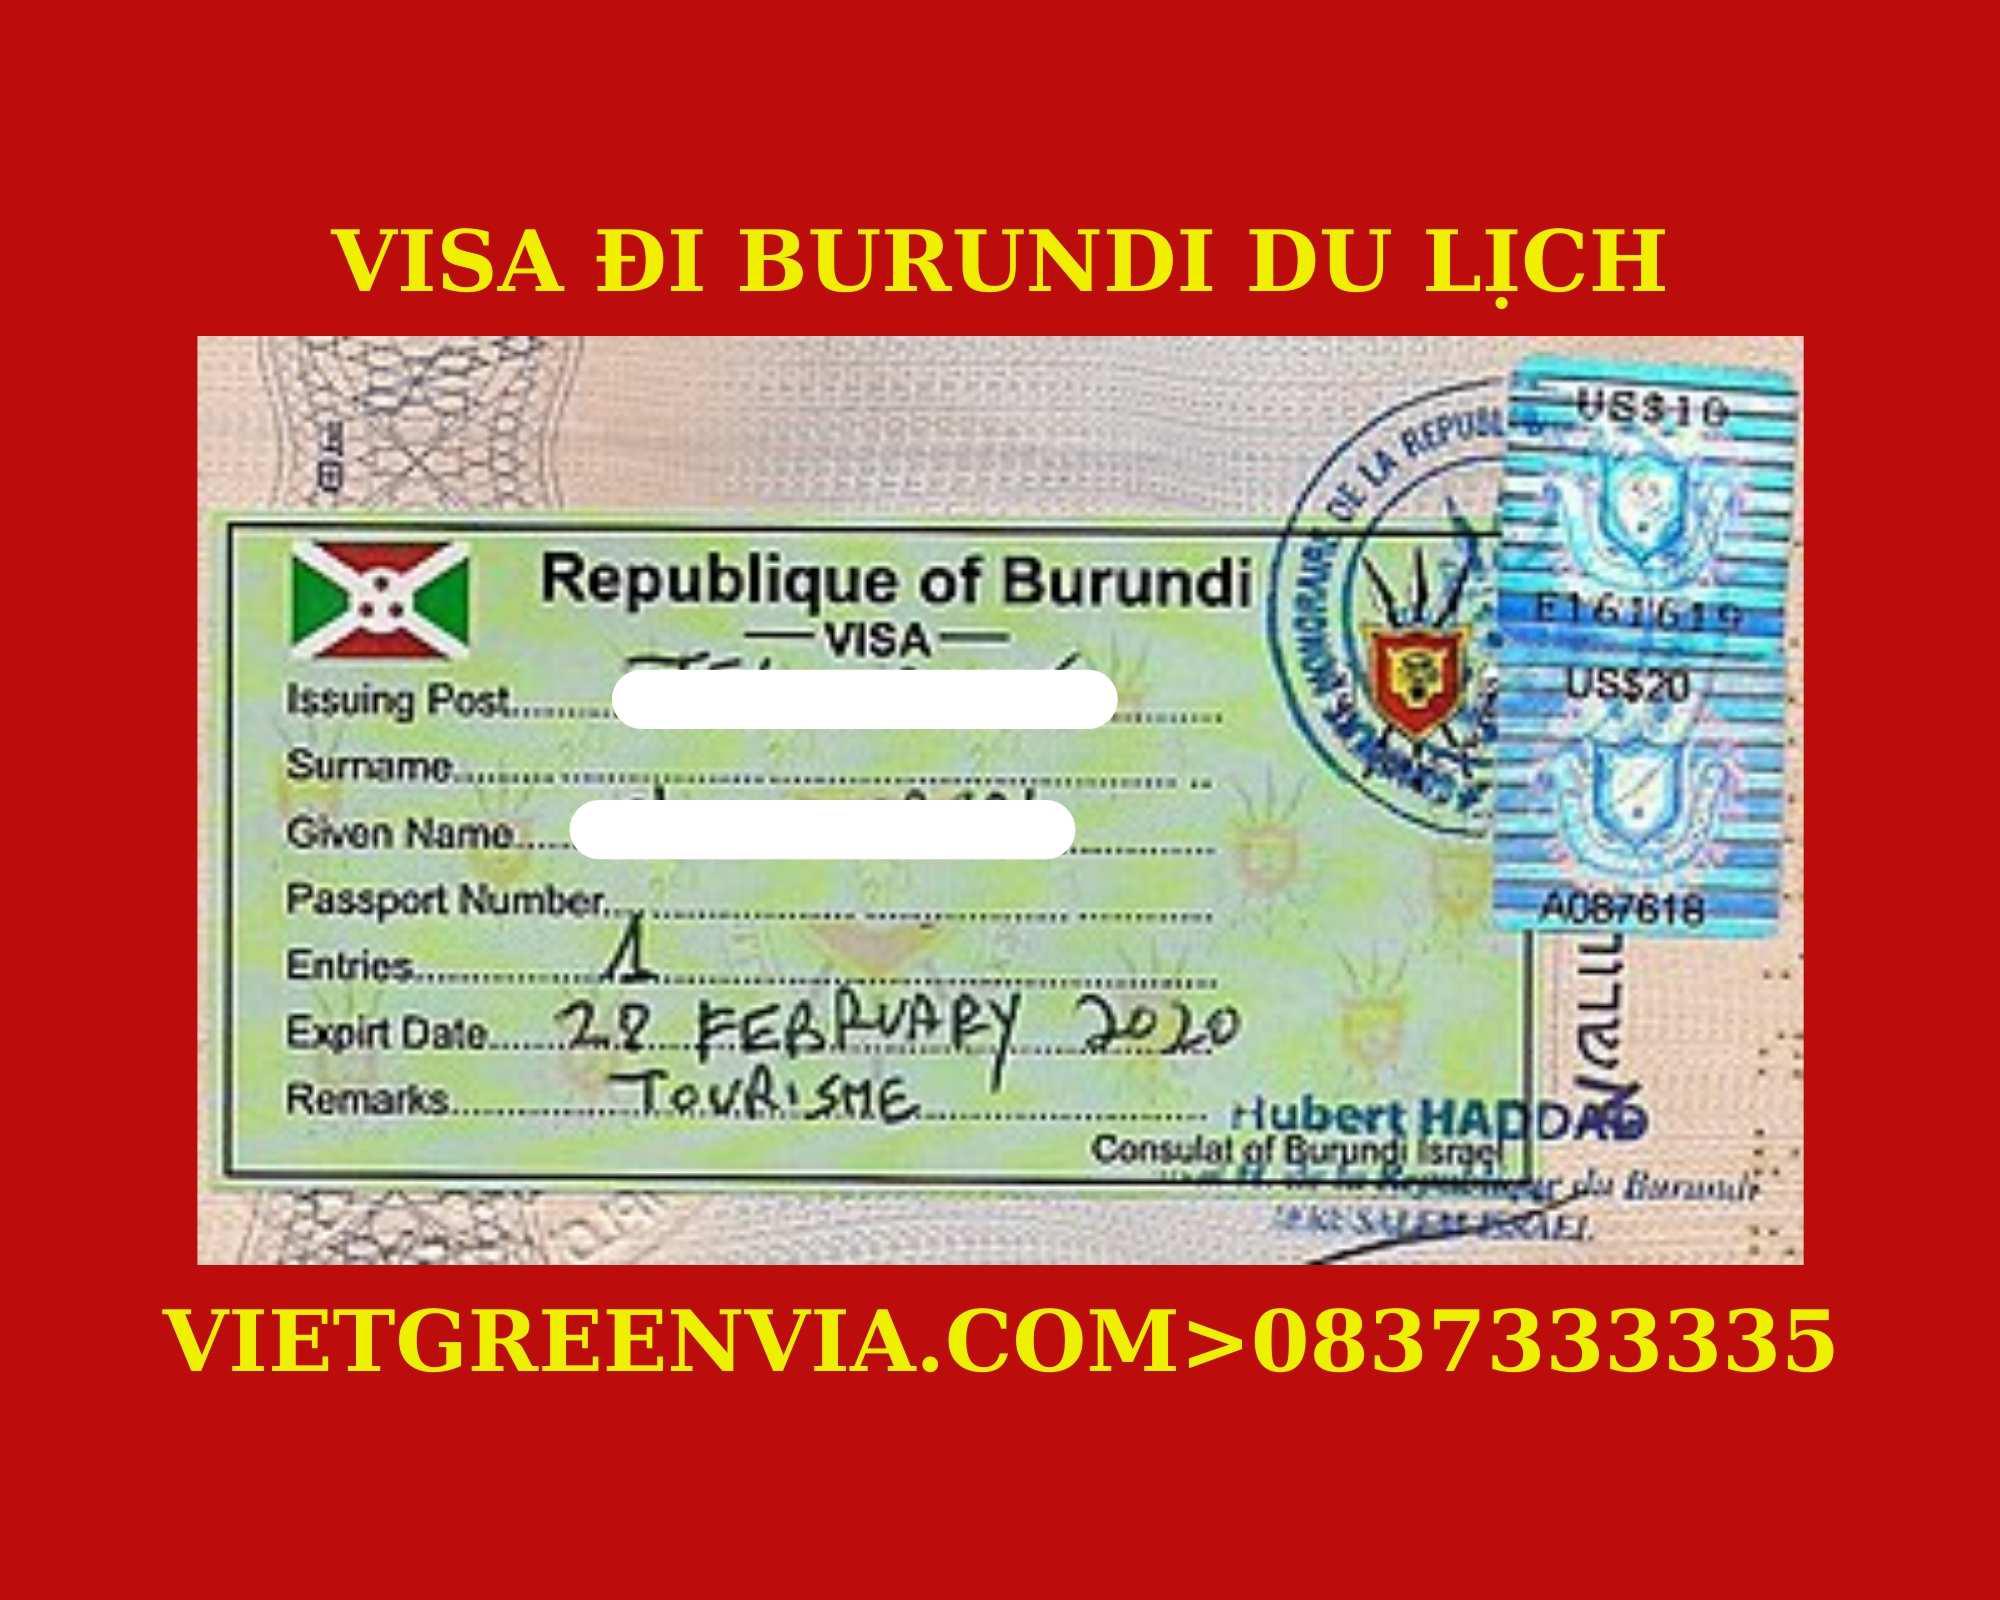 Dịch vụ xin Visa du lịch Burundi uy tín, trọn gói